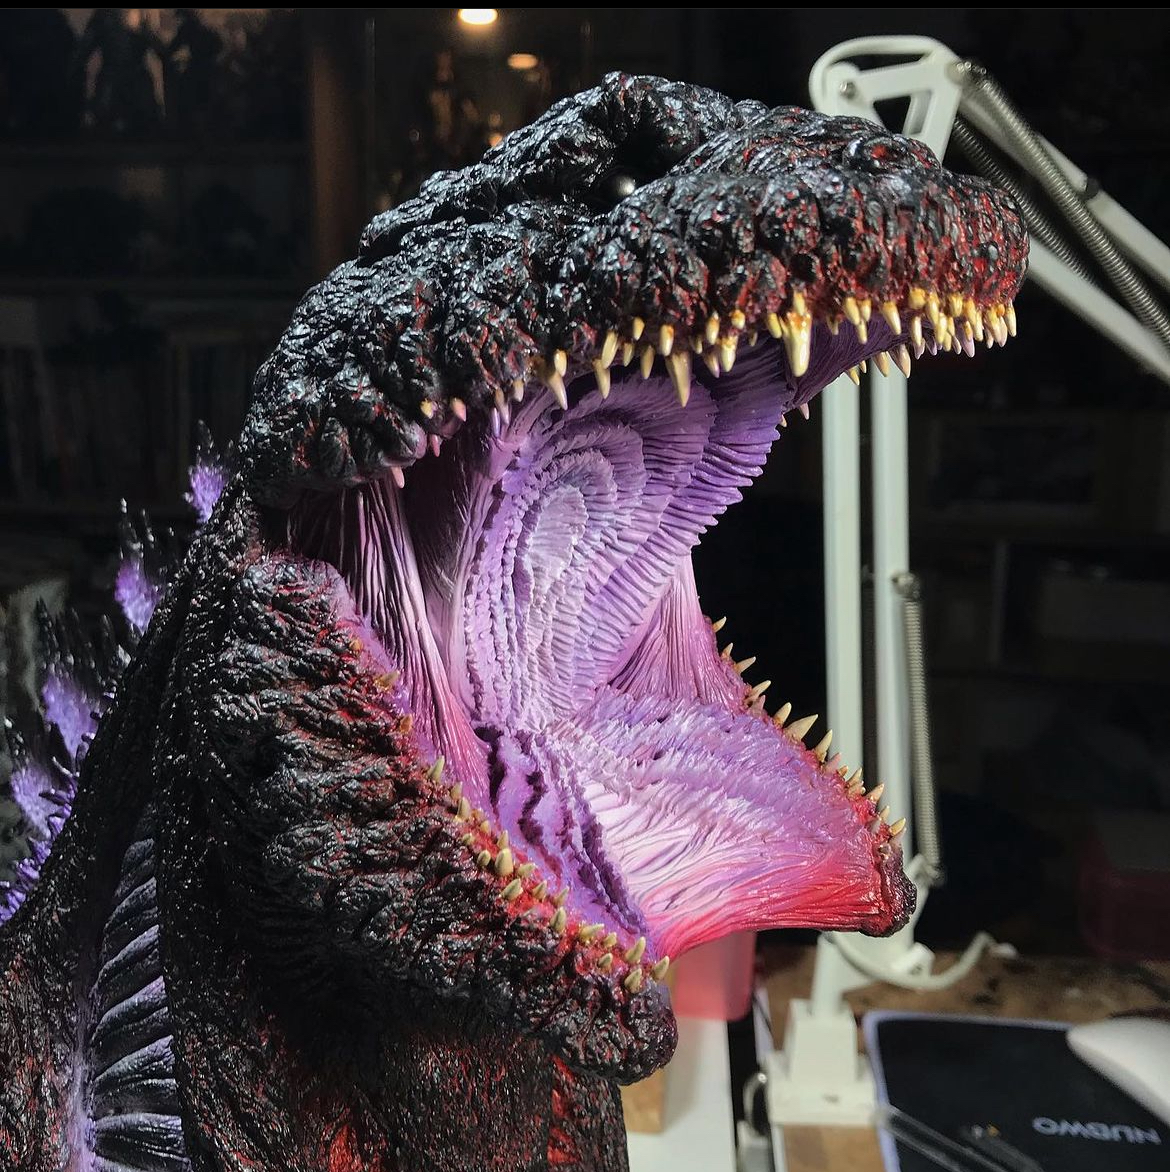 Godzilla mouth Blank Meme Template